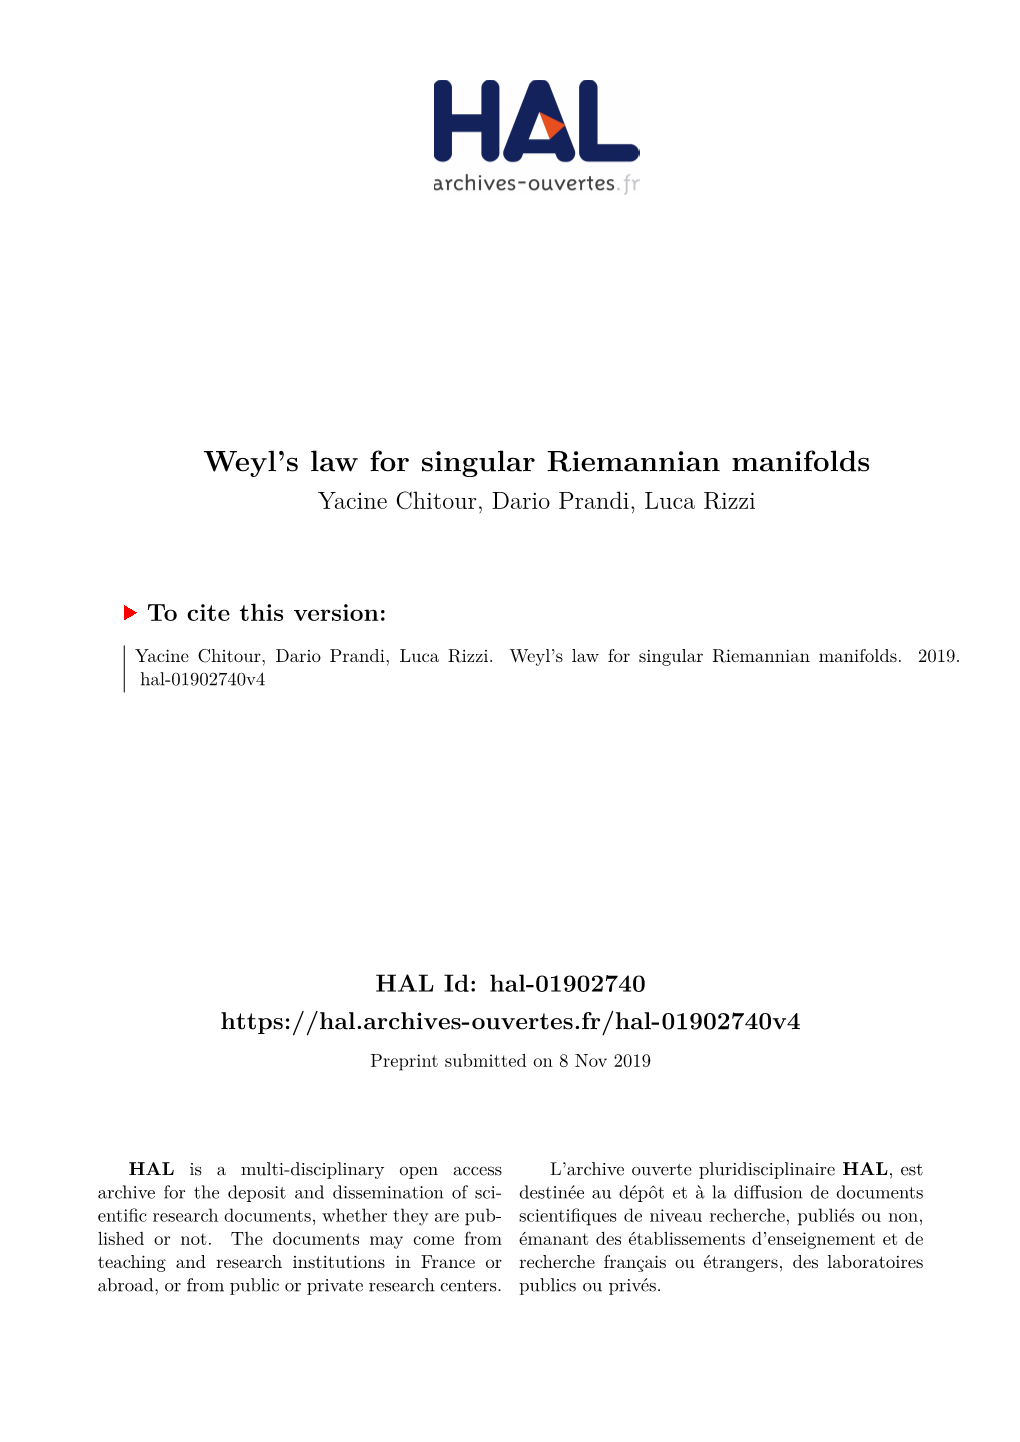 Weyl's Law for Singular Riemannian Manifolds